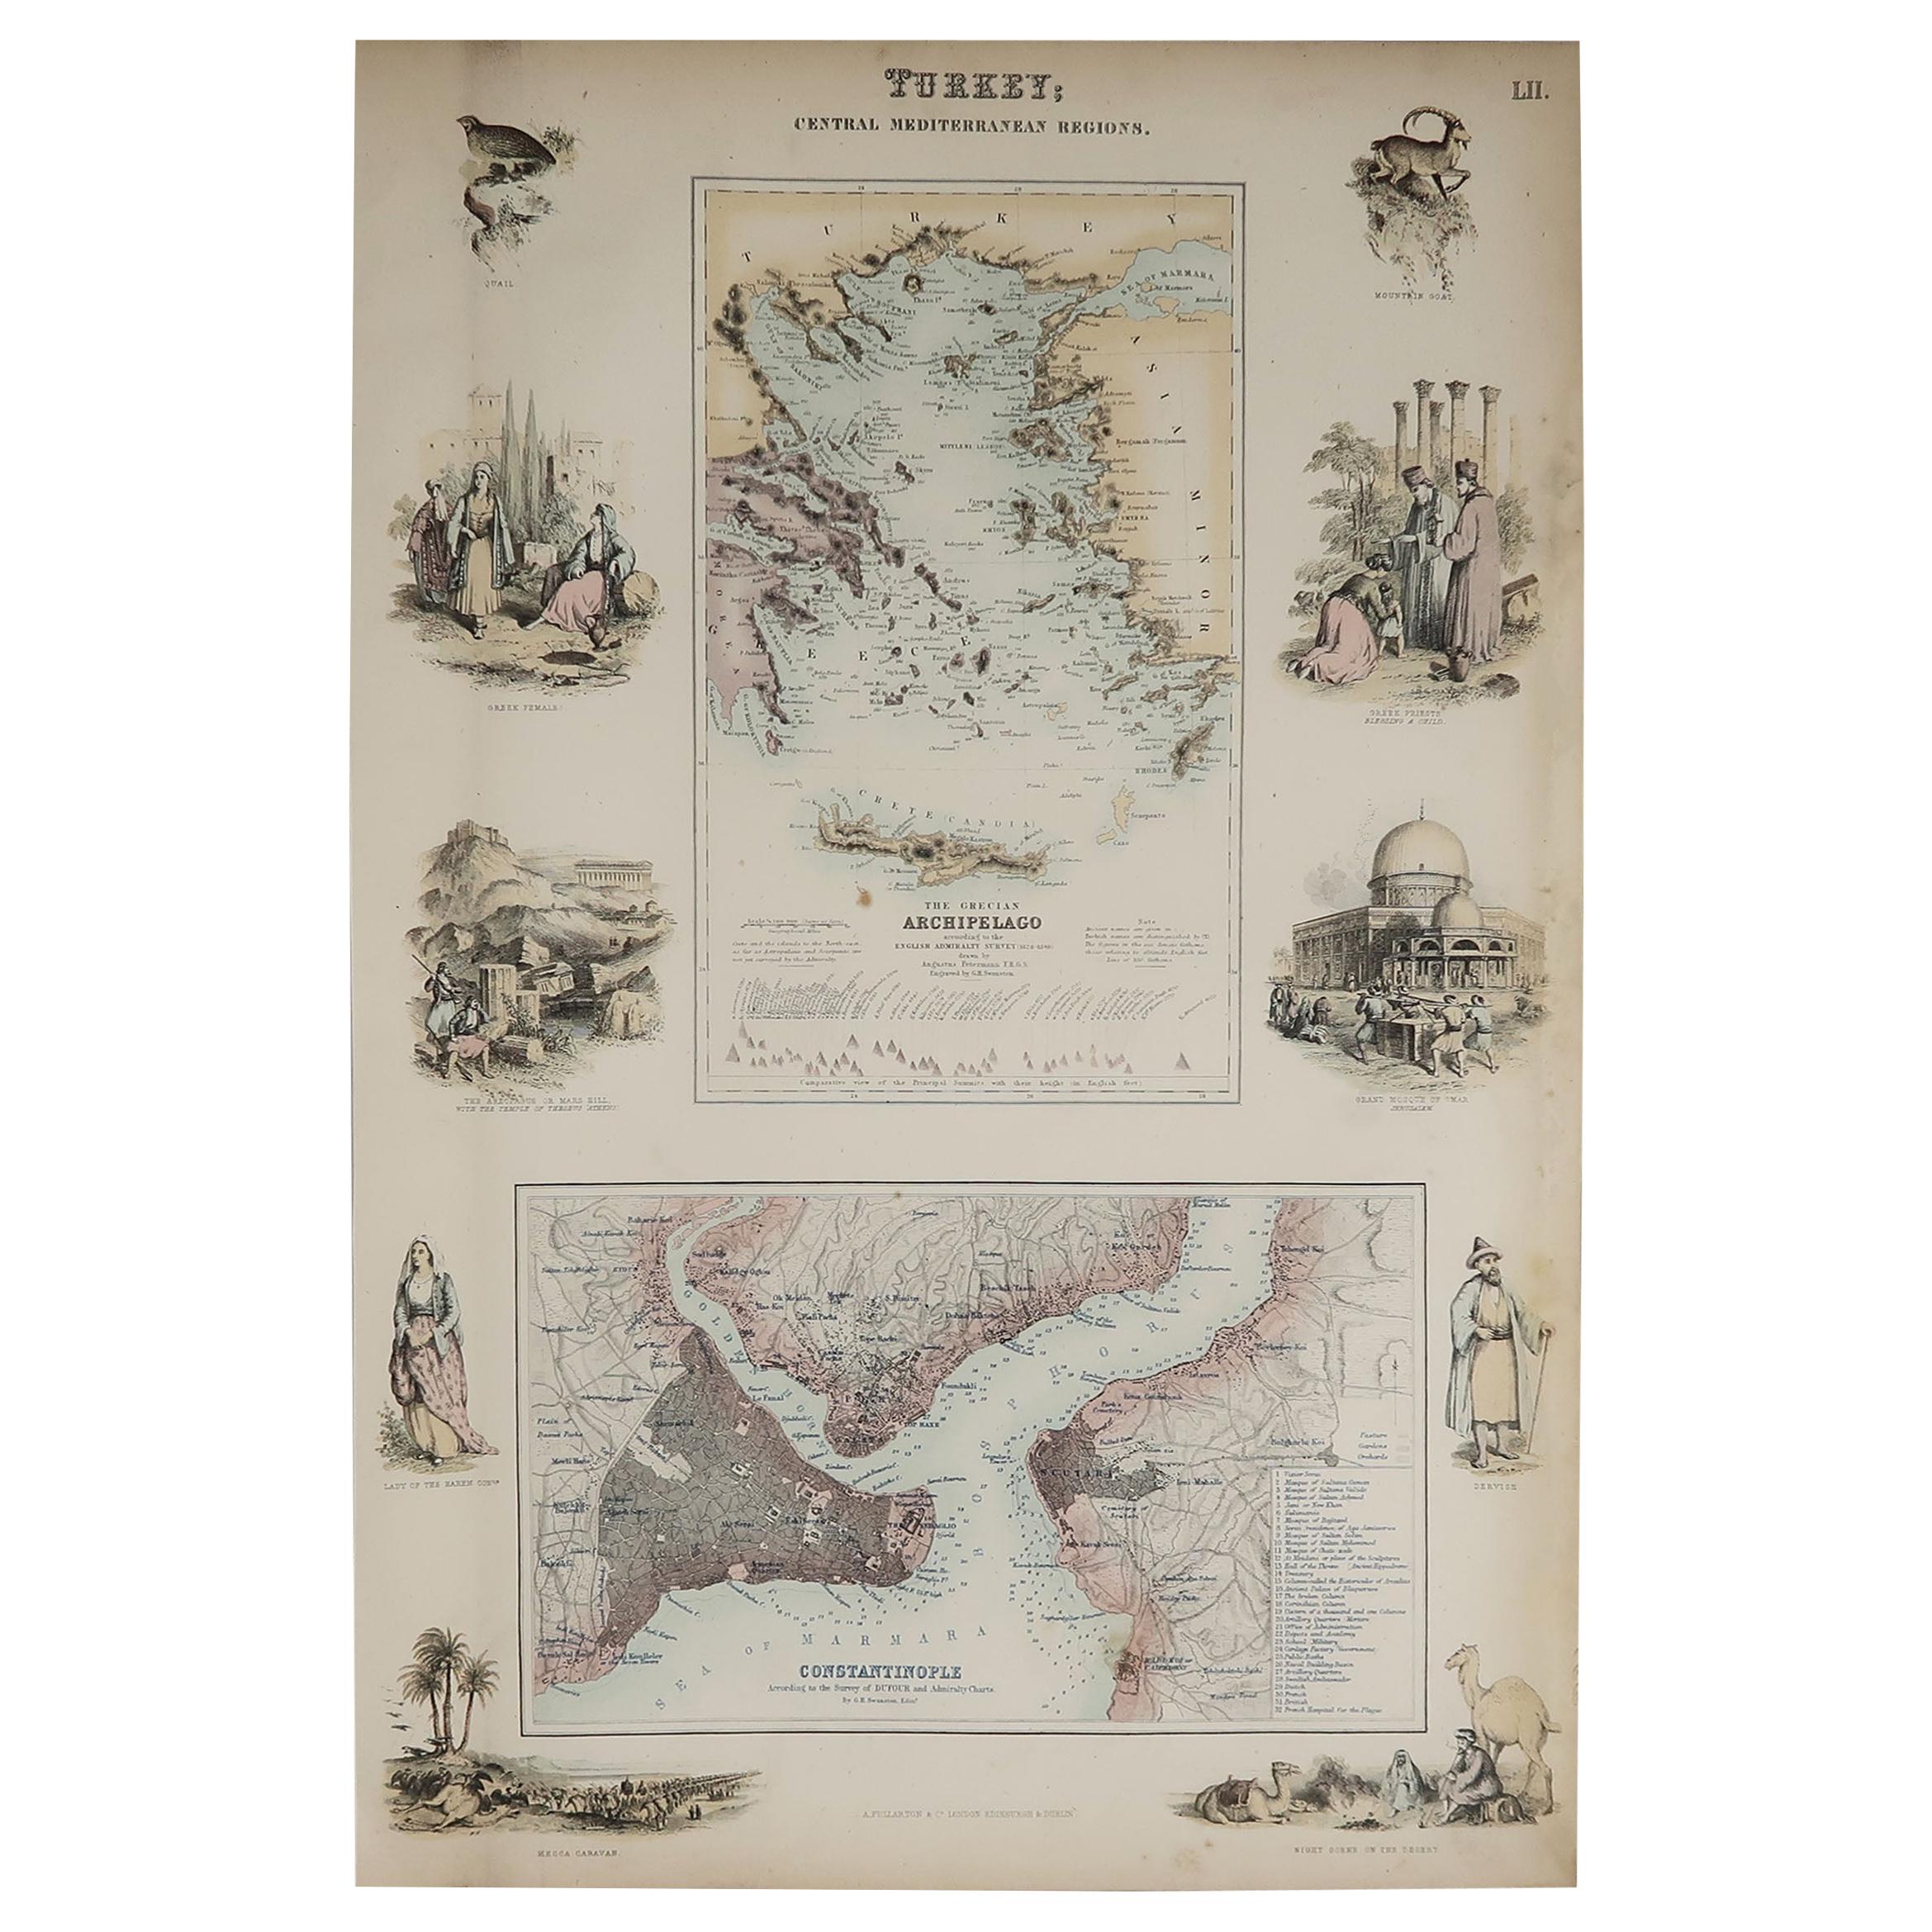 Original Antique Decorative Map of Greece & Istanbul, Fullarton, C.1870